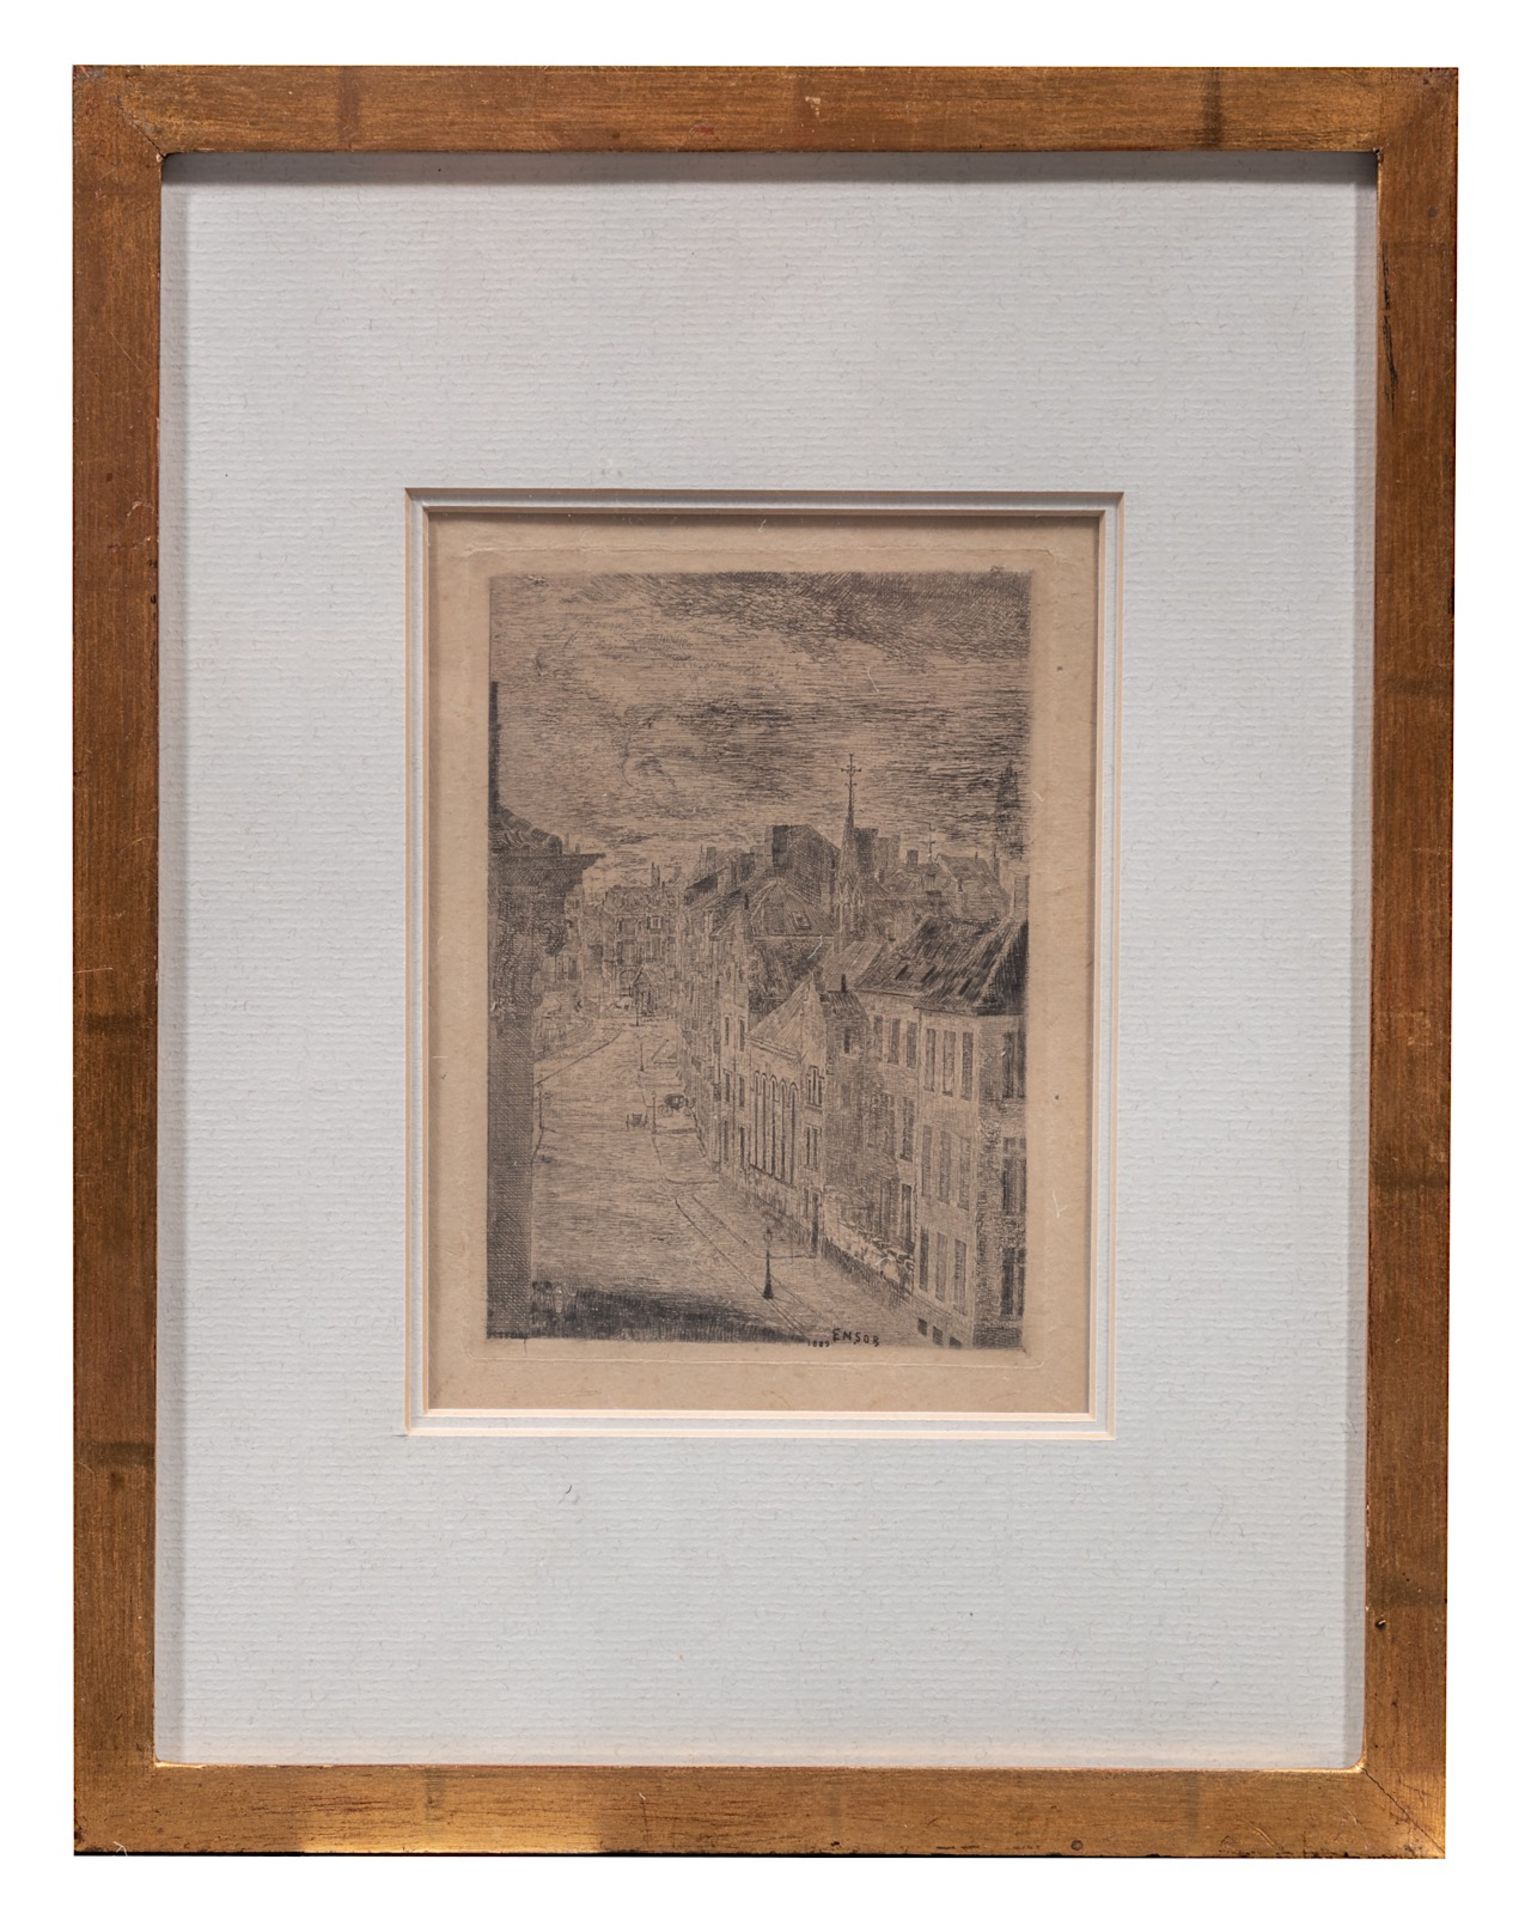 James Ensor (1860-1949), 'Van Iseghem Boulevard te Oostende' (1889), etching and drypoint on simili - Image 2 of 5